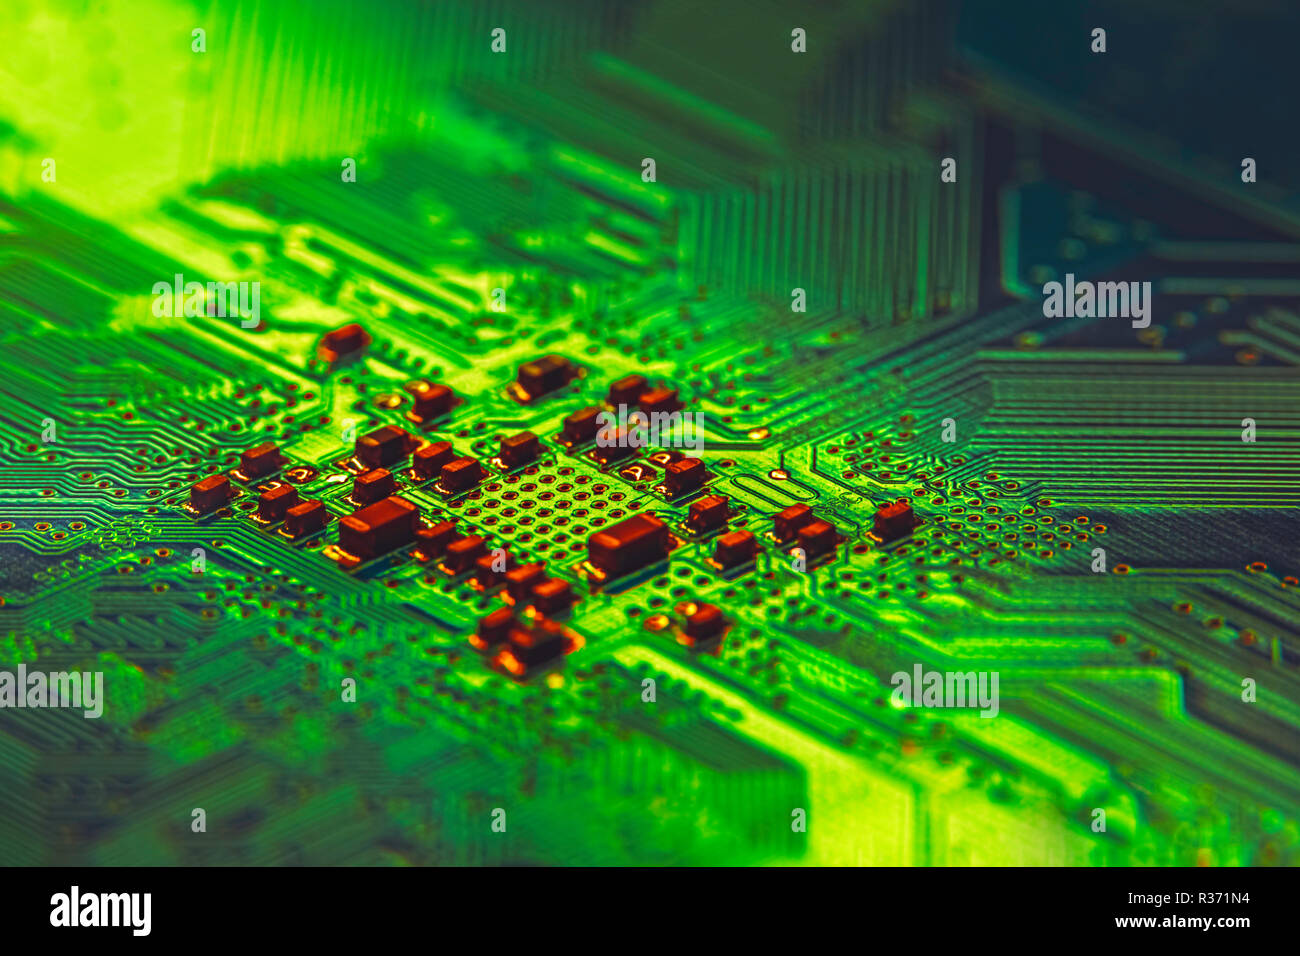 Immagine di sfondo texture della scheda madre microchip digitale Foto Stock